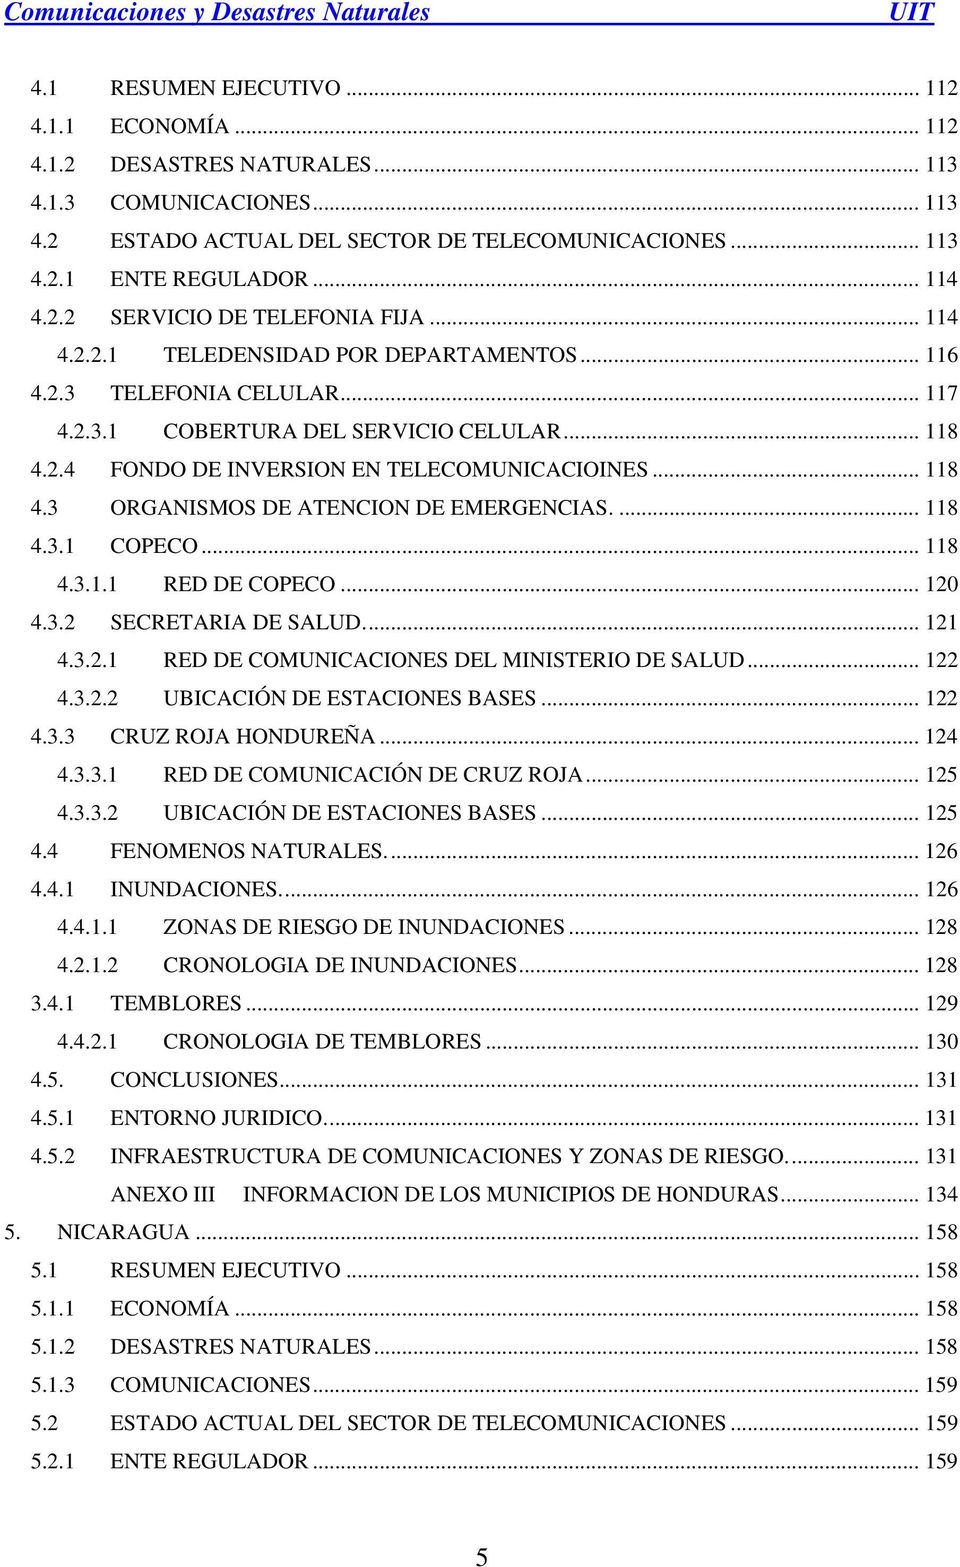 .. 118 4.3 ORGANISMOS DE ATENCION DE EMERGENCIAS.... 118 4.3.1 COPECO... 118 4.3.1.1 RED DE COPECO... 120 4.3.2 SECRETARIA DE SALUD... 121 4.3.2.1 RED DE COMUNICACIONES DEL MINISTERIO DE SALUD... 122 4.